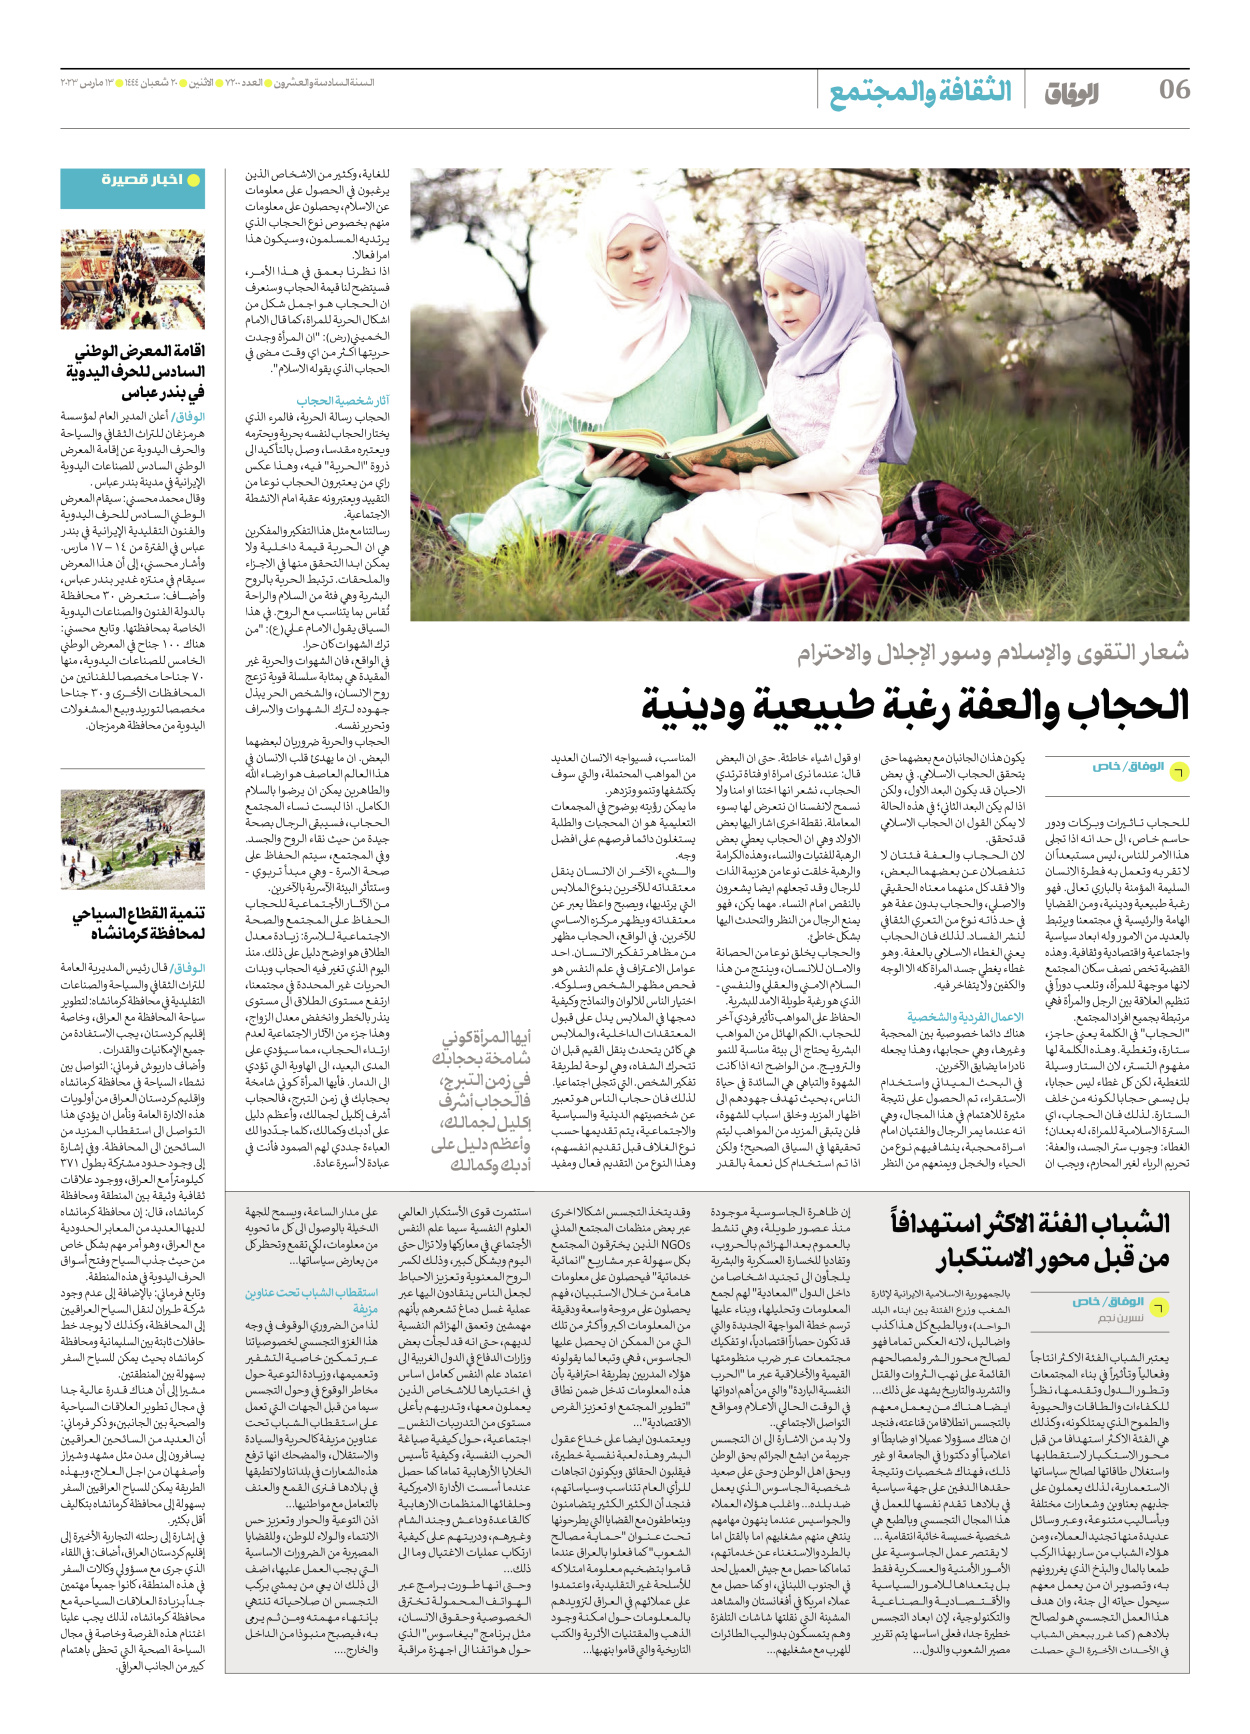 صحیفة ایران الدولیة الوفاق - العدد سبعة آلاف ومائتان - ١٣ مارس ٢٠٢٣ - الصفحة ٦